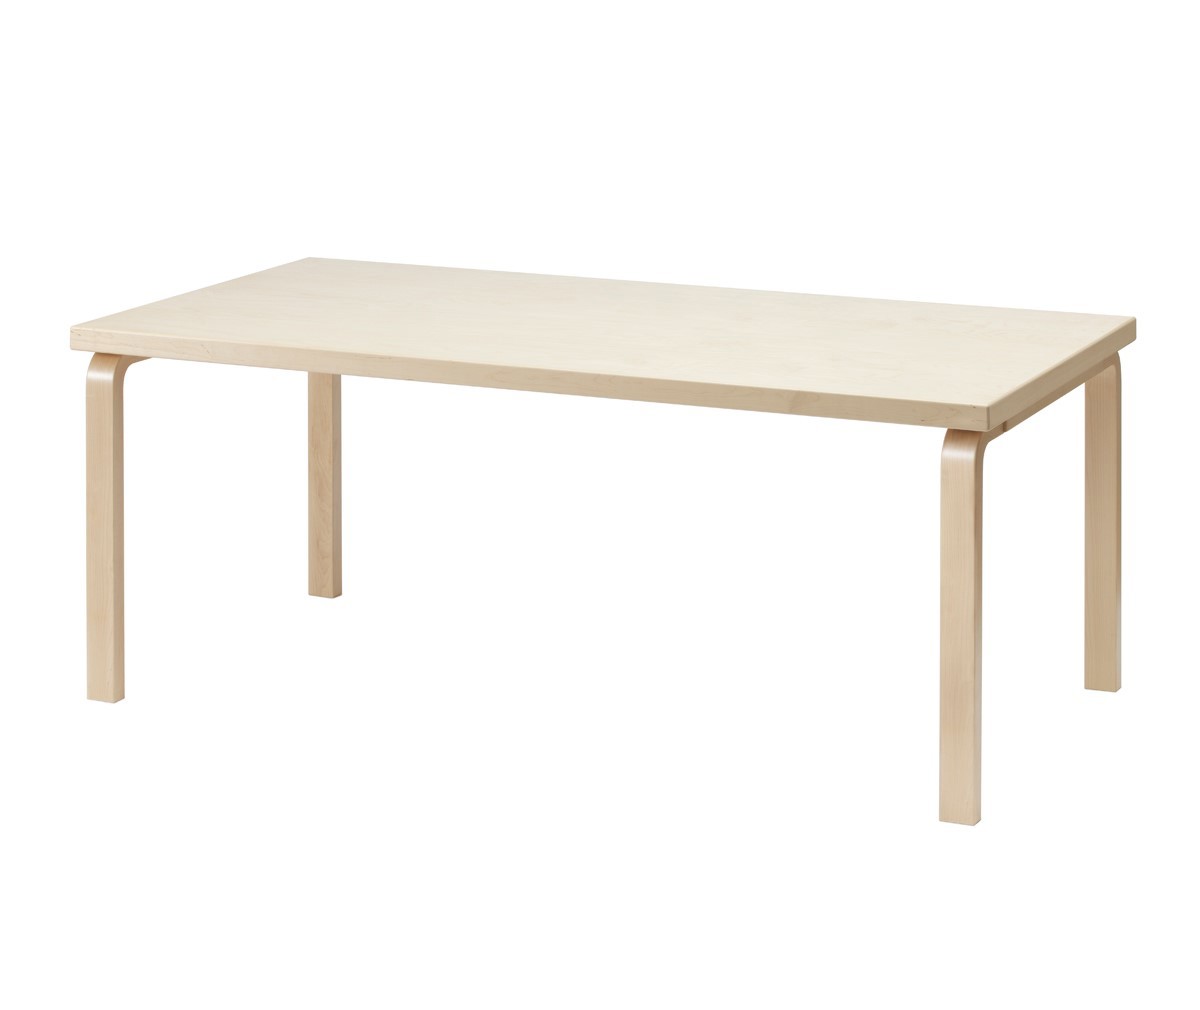 Artek Table 83 Birch, 91 x 182 cm